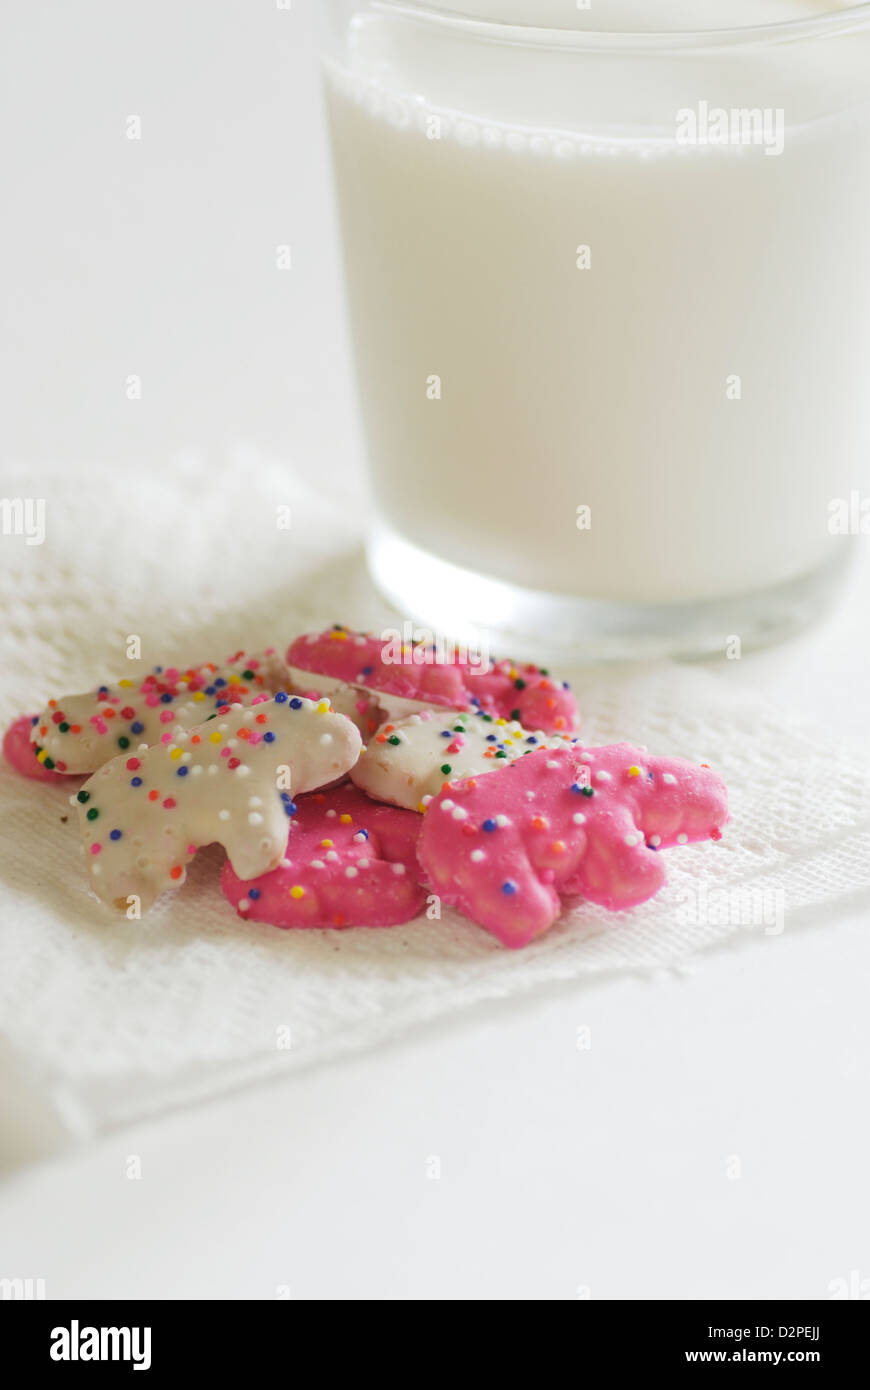 Rosa und weiß gefrostet Tier Cookies mit Streusel auf eine weiße Serviette mit einem Glas Kuhmilch Stockfoto